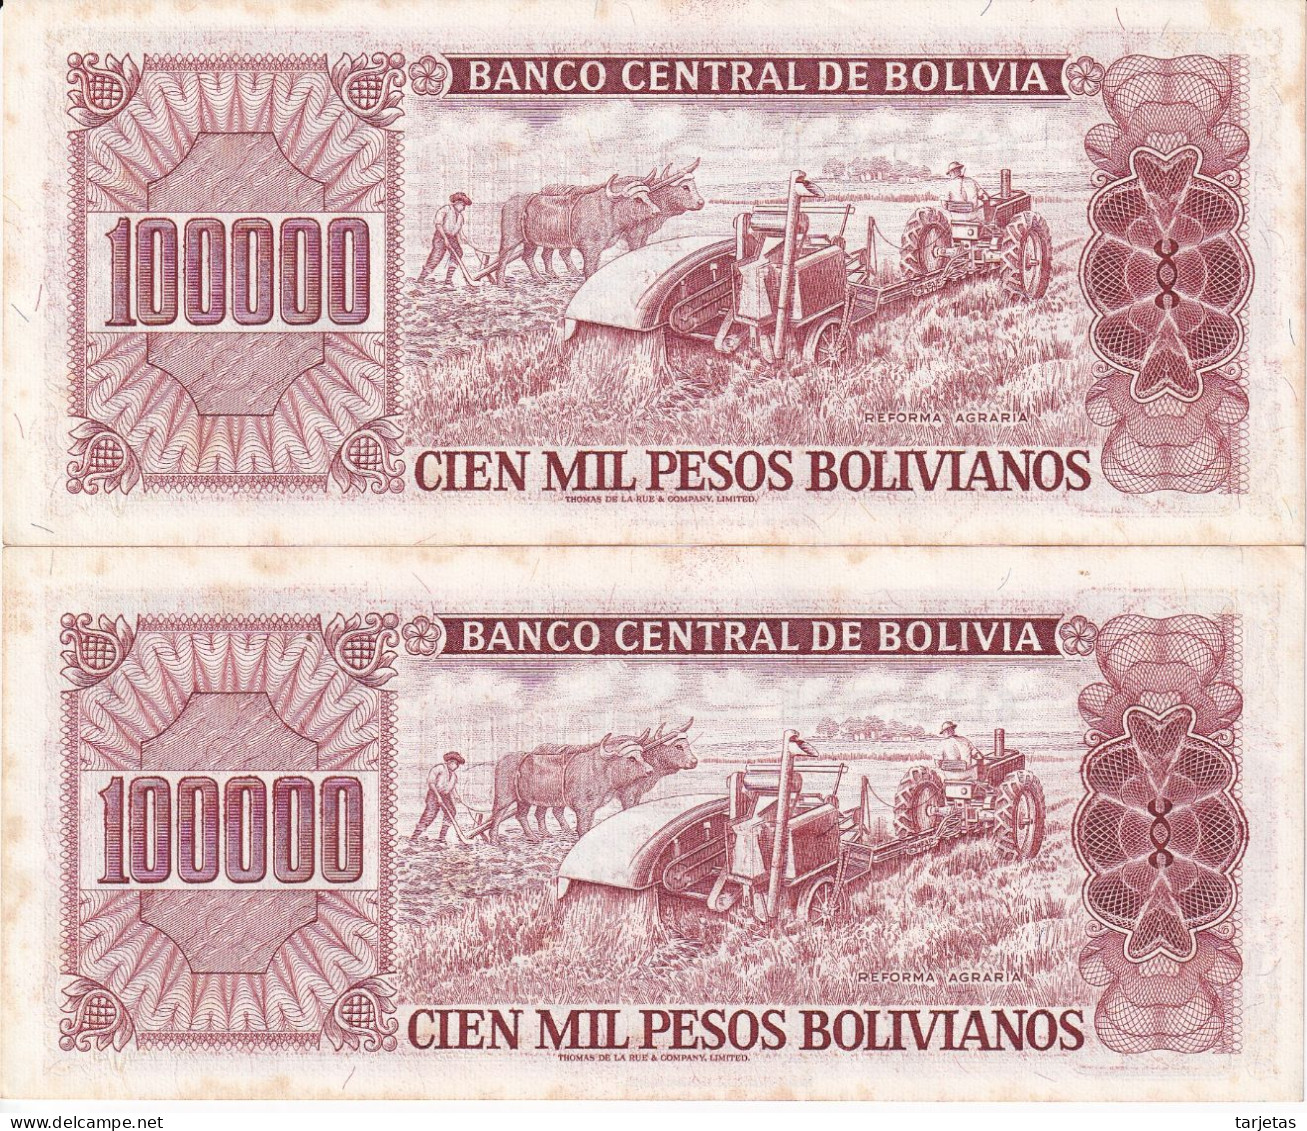 PAREJA CORRELATIVA DE BOLIVIA DE 10000 BOLIVIANOS DEL AÑO 1984 (BANKNOTE) - Bolivia